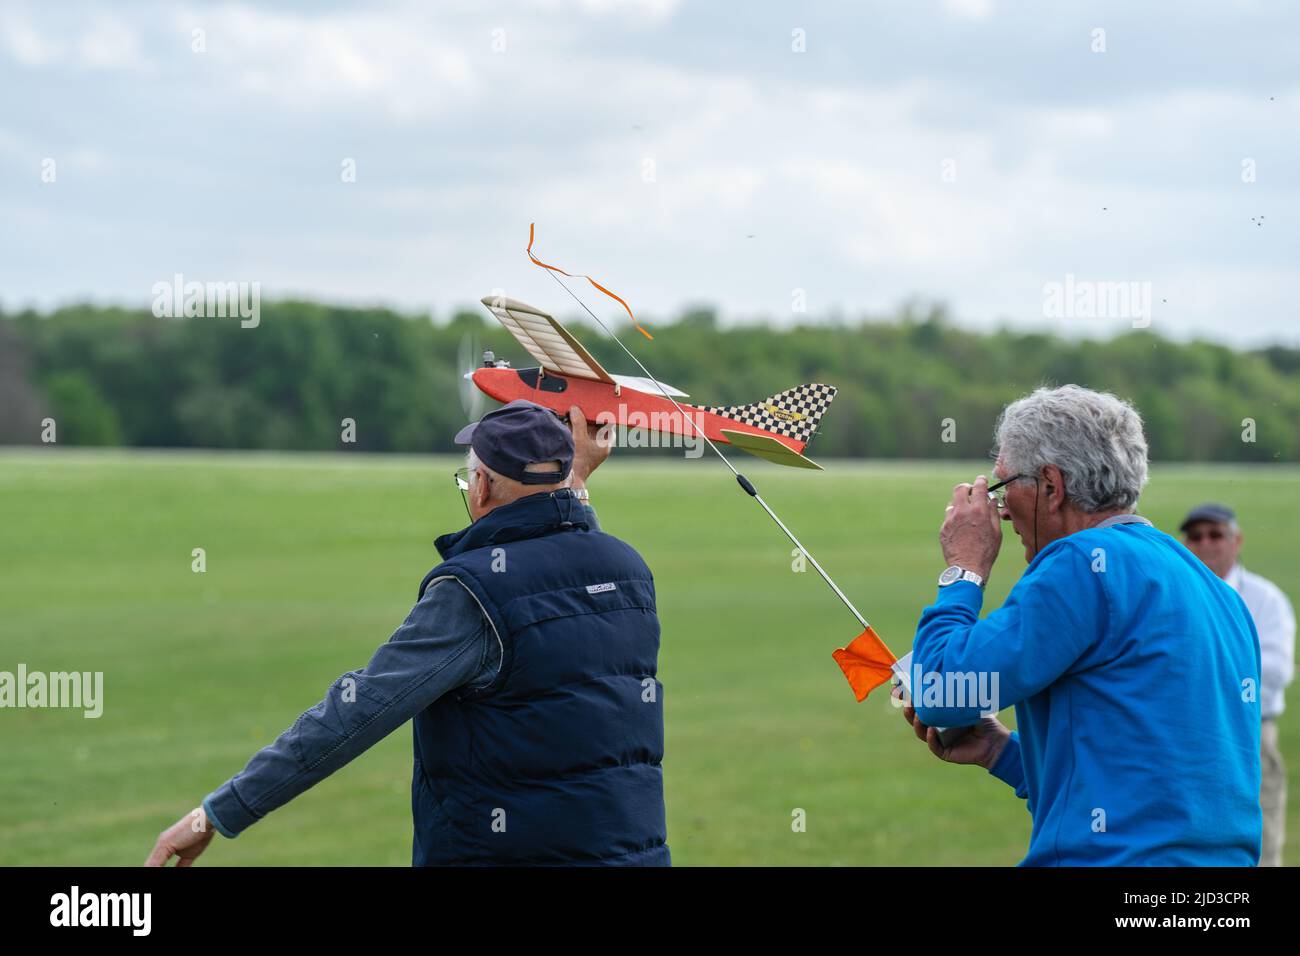 L'uomo lancia l'aereo modello sul campo d'erba. Shuttleworth, Inghilterra, 8 maggio 2022 Foto Stock